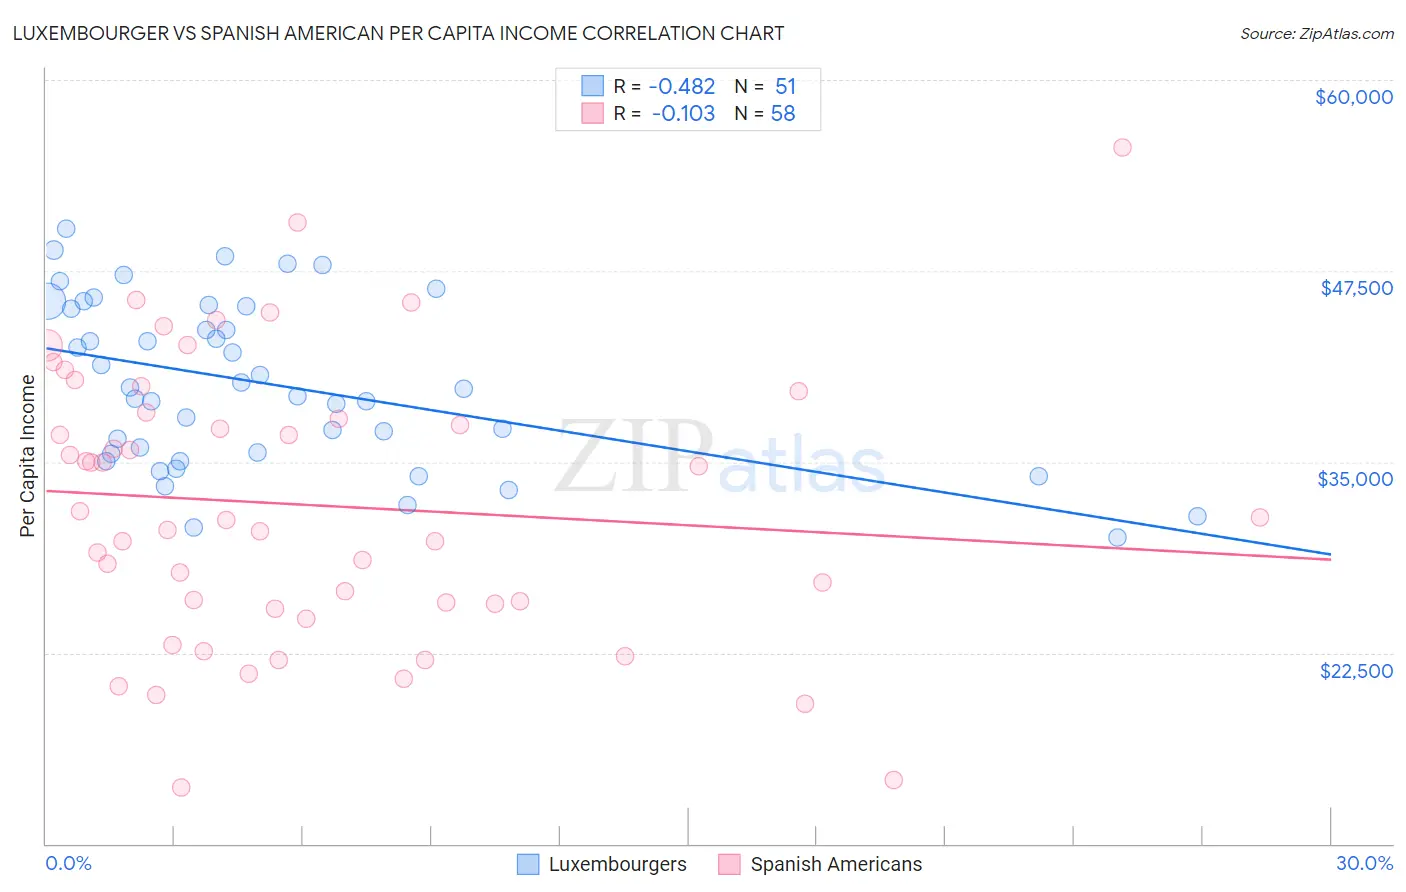 Luxembourger vs Spanish American Per Capita Income